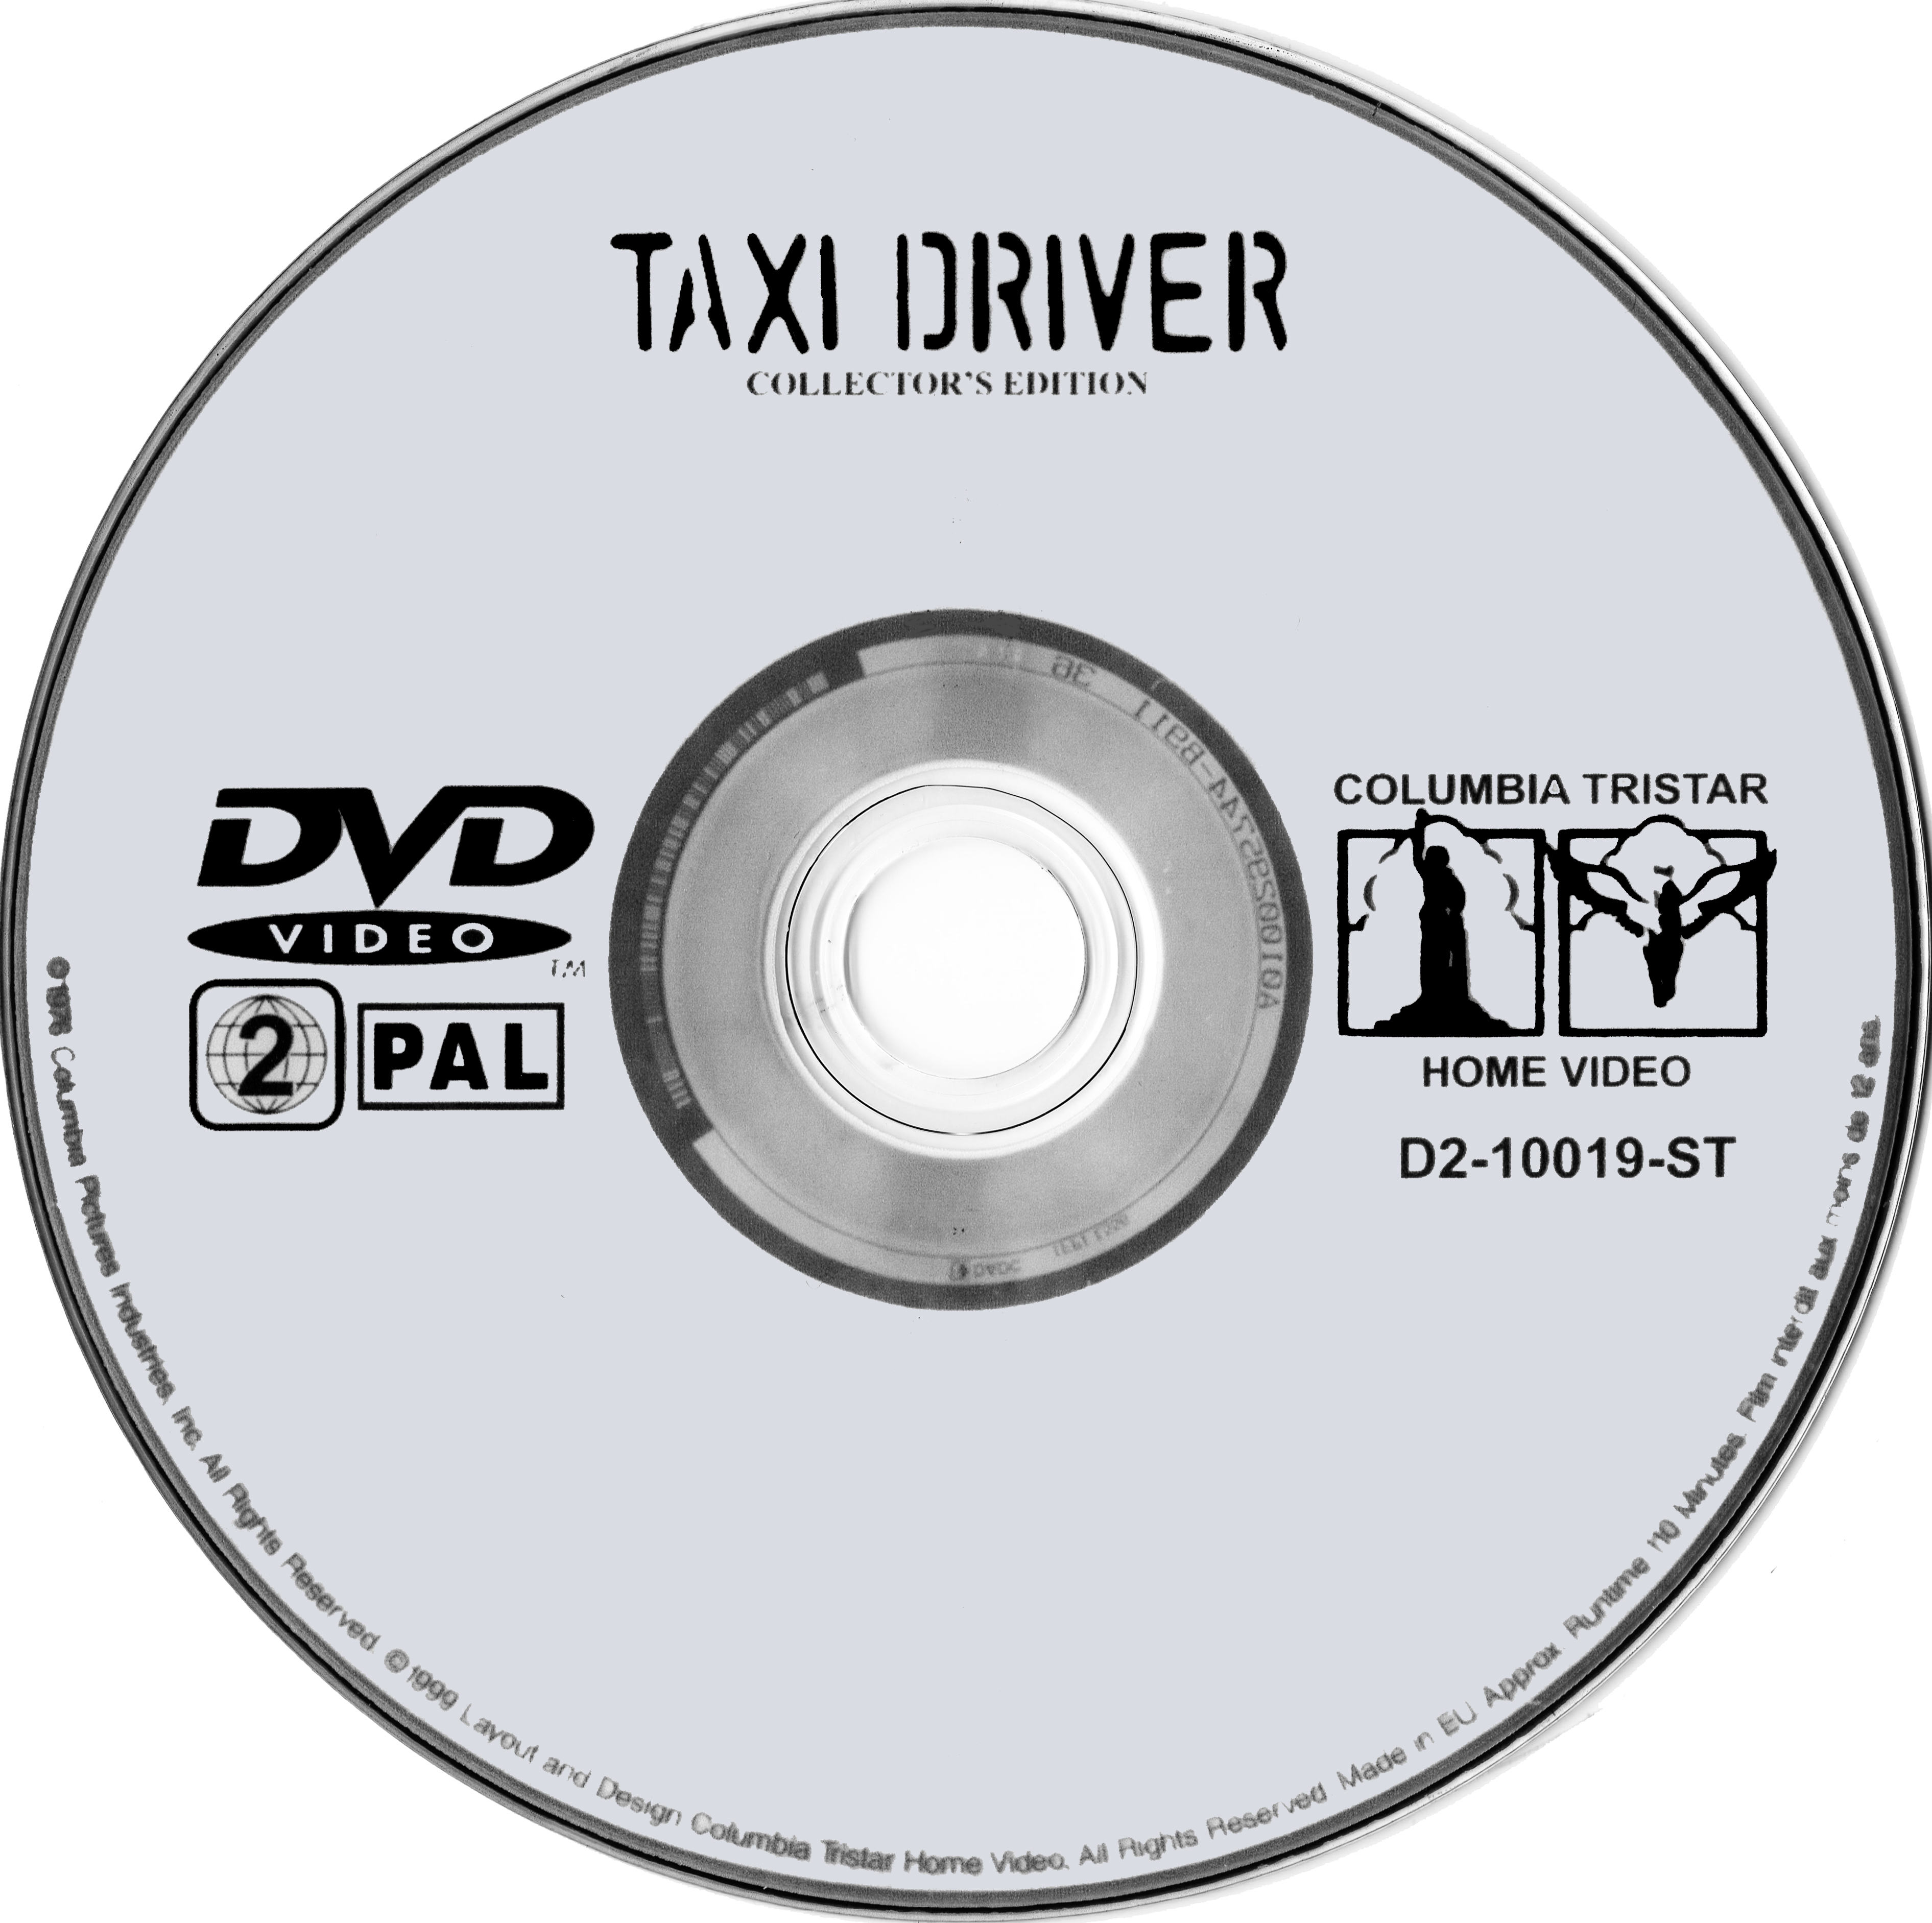 Taxi Driver v3